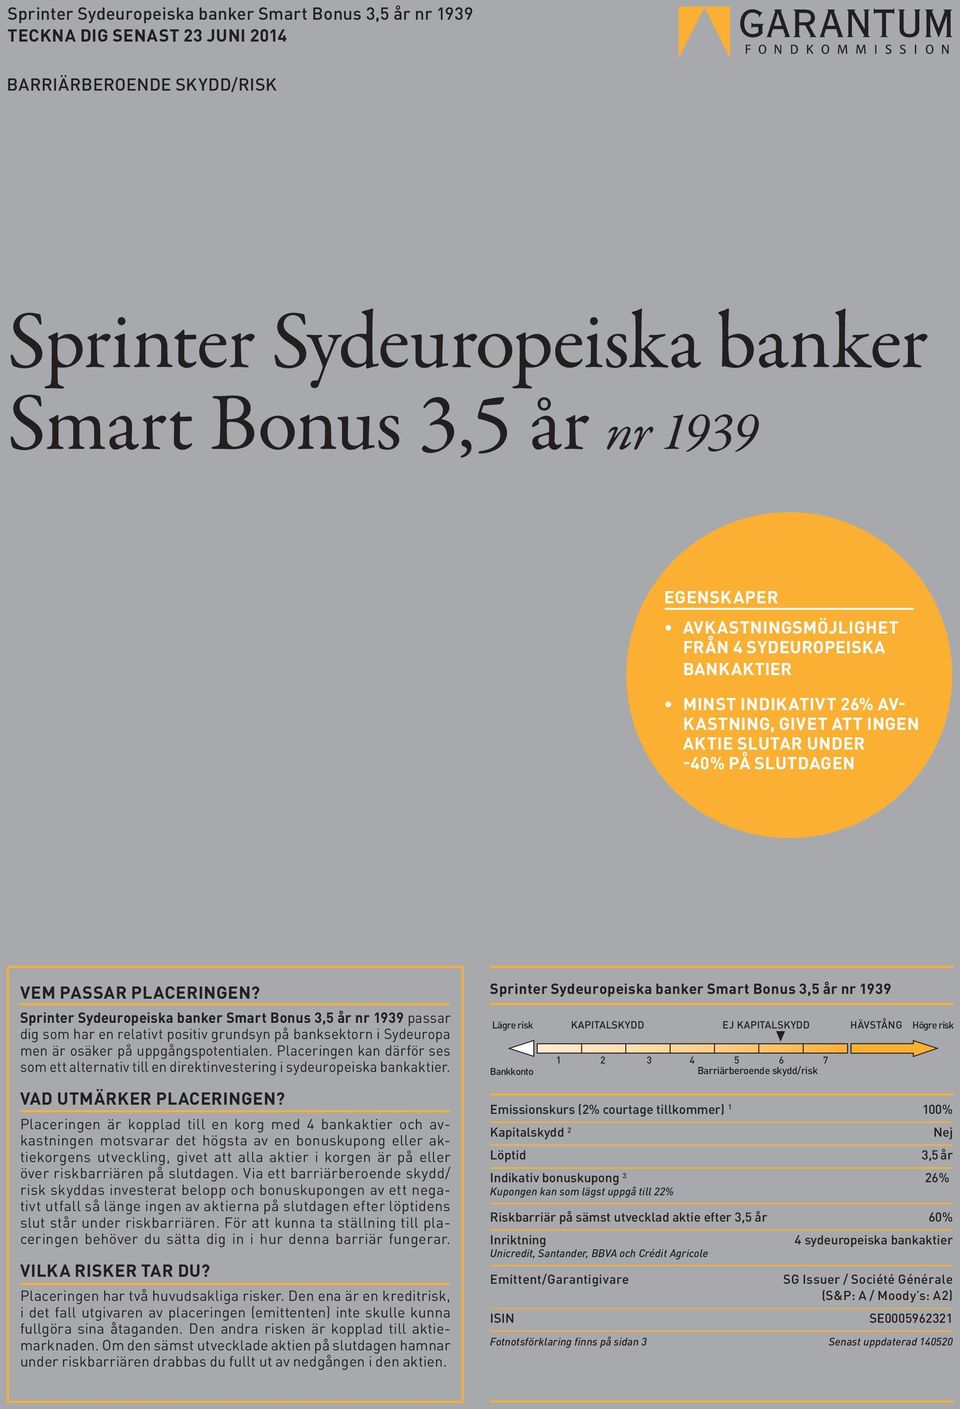 Sprinter Sydeuropeiska banker Smart Bonus 3,5 år nr 1939 passar dig som har en relativt positiv grundsyn på banksektorn i Sydeuropa men är osäker på uppgångspotentialen.